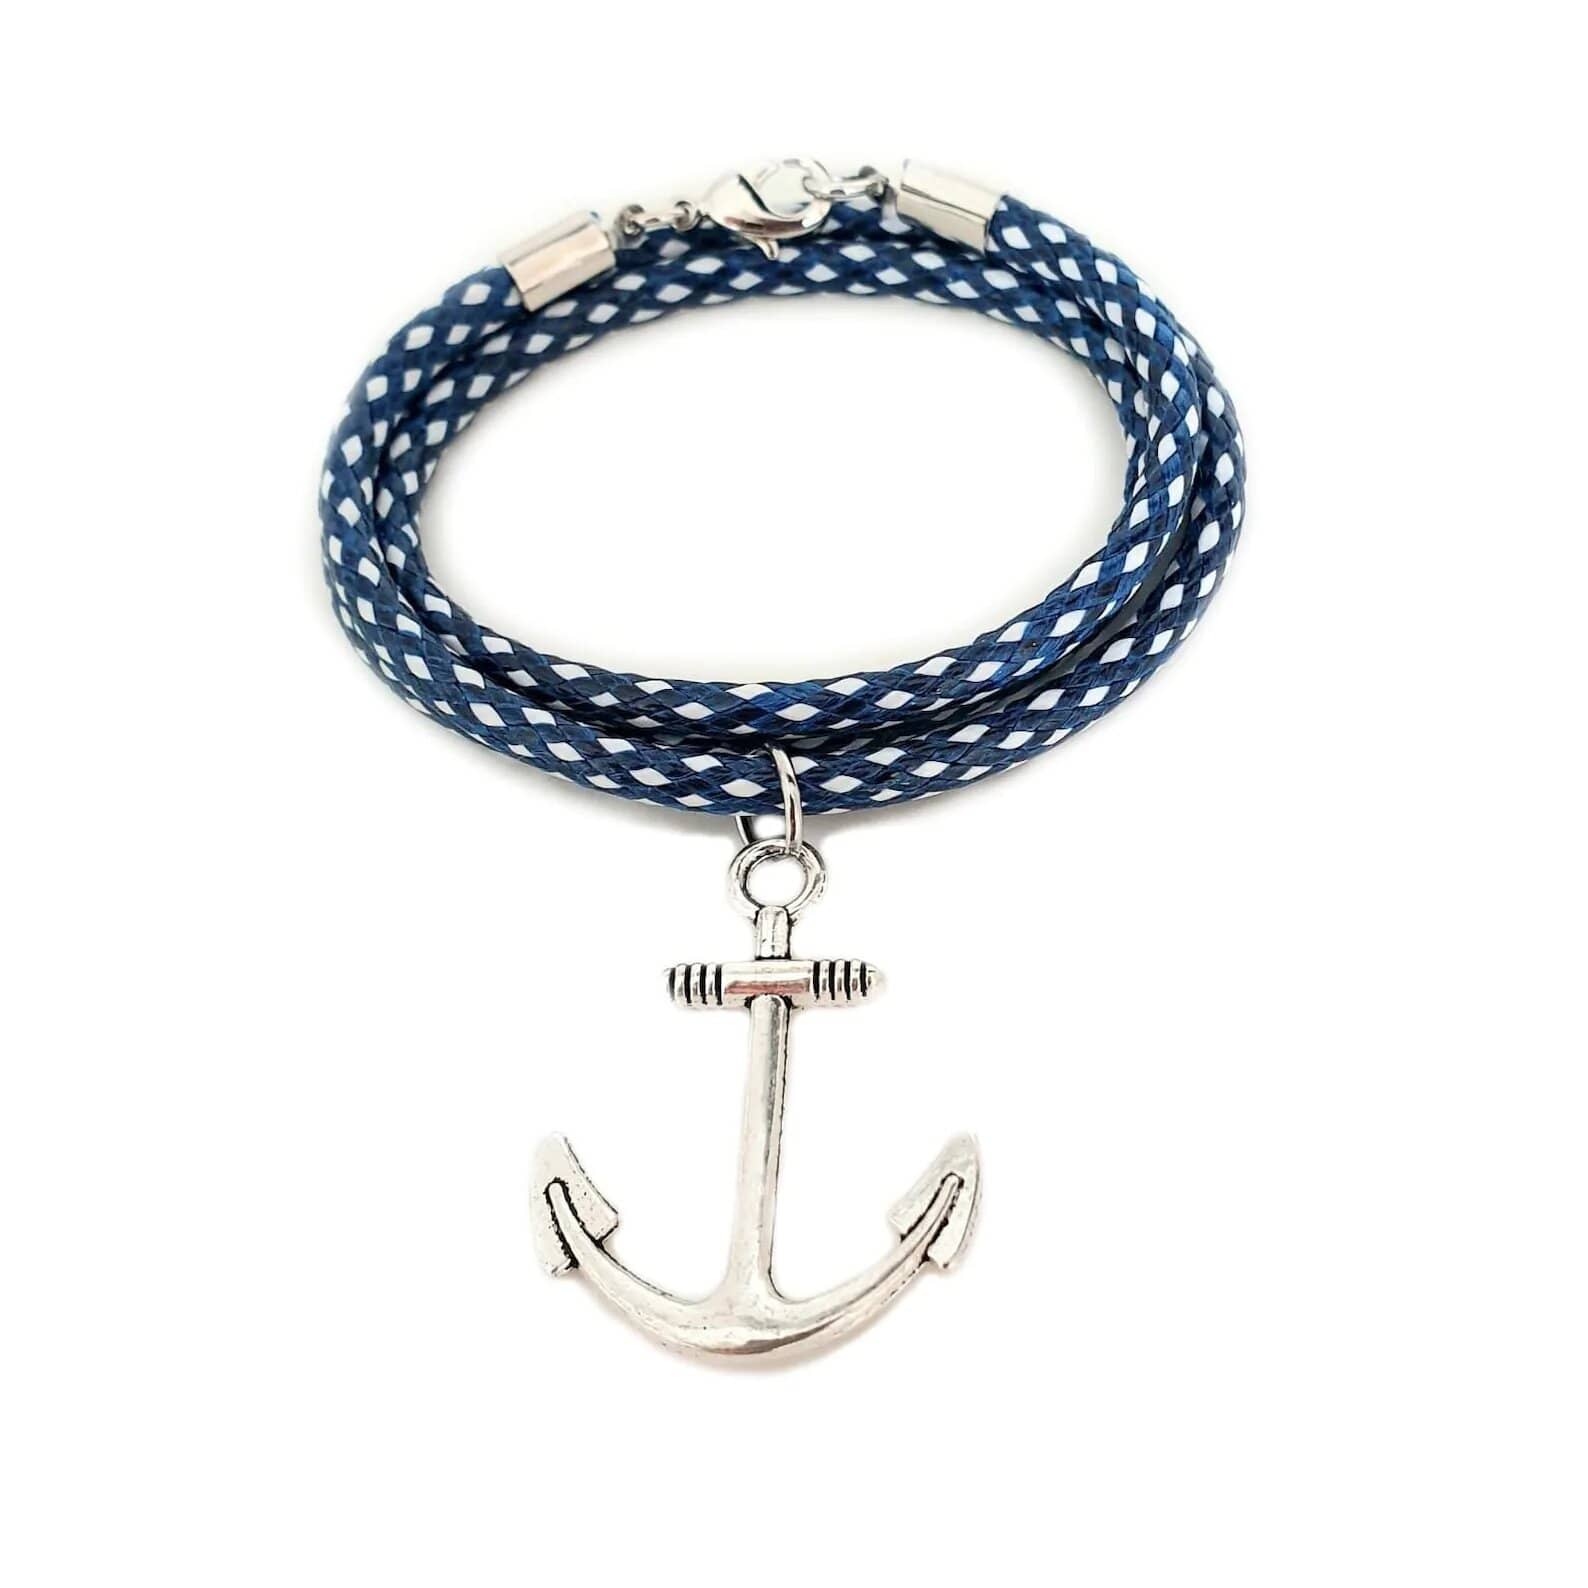 Nautical Monogram Jewelry Gift Set